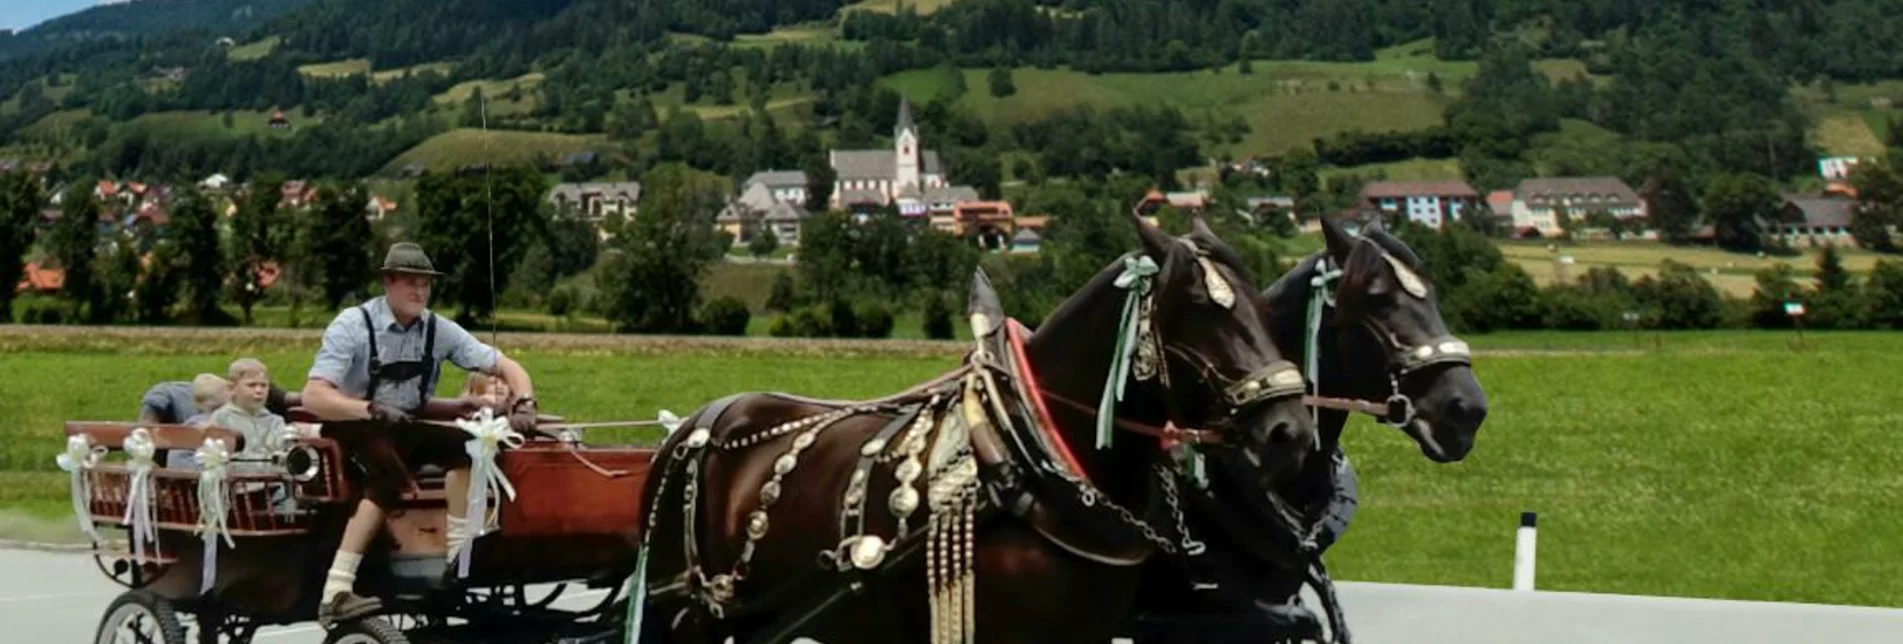 Horse Carriage Ride Horse-drawn sleigh & carriage rides - Touren-Impression #1 | © Norikerzucht Putzenbacher